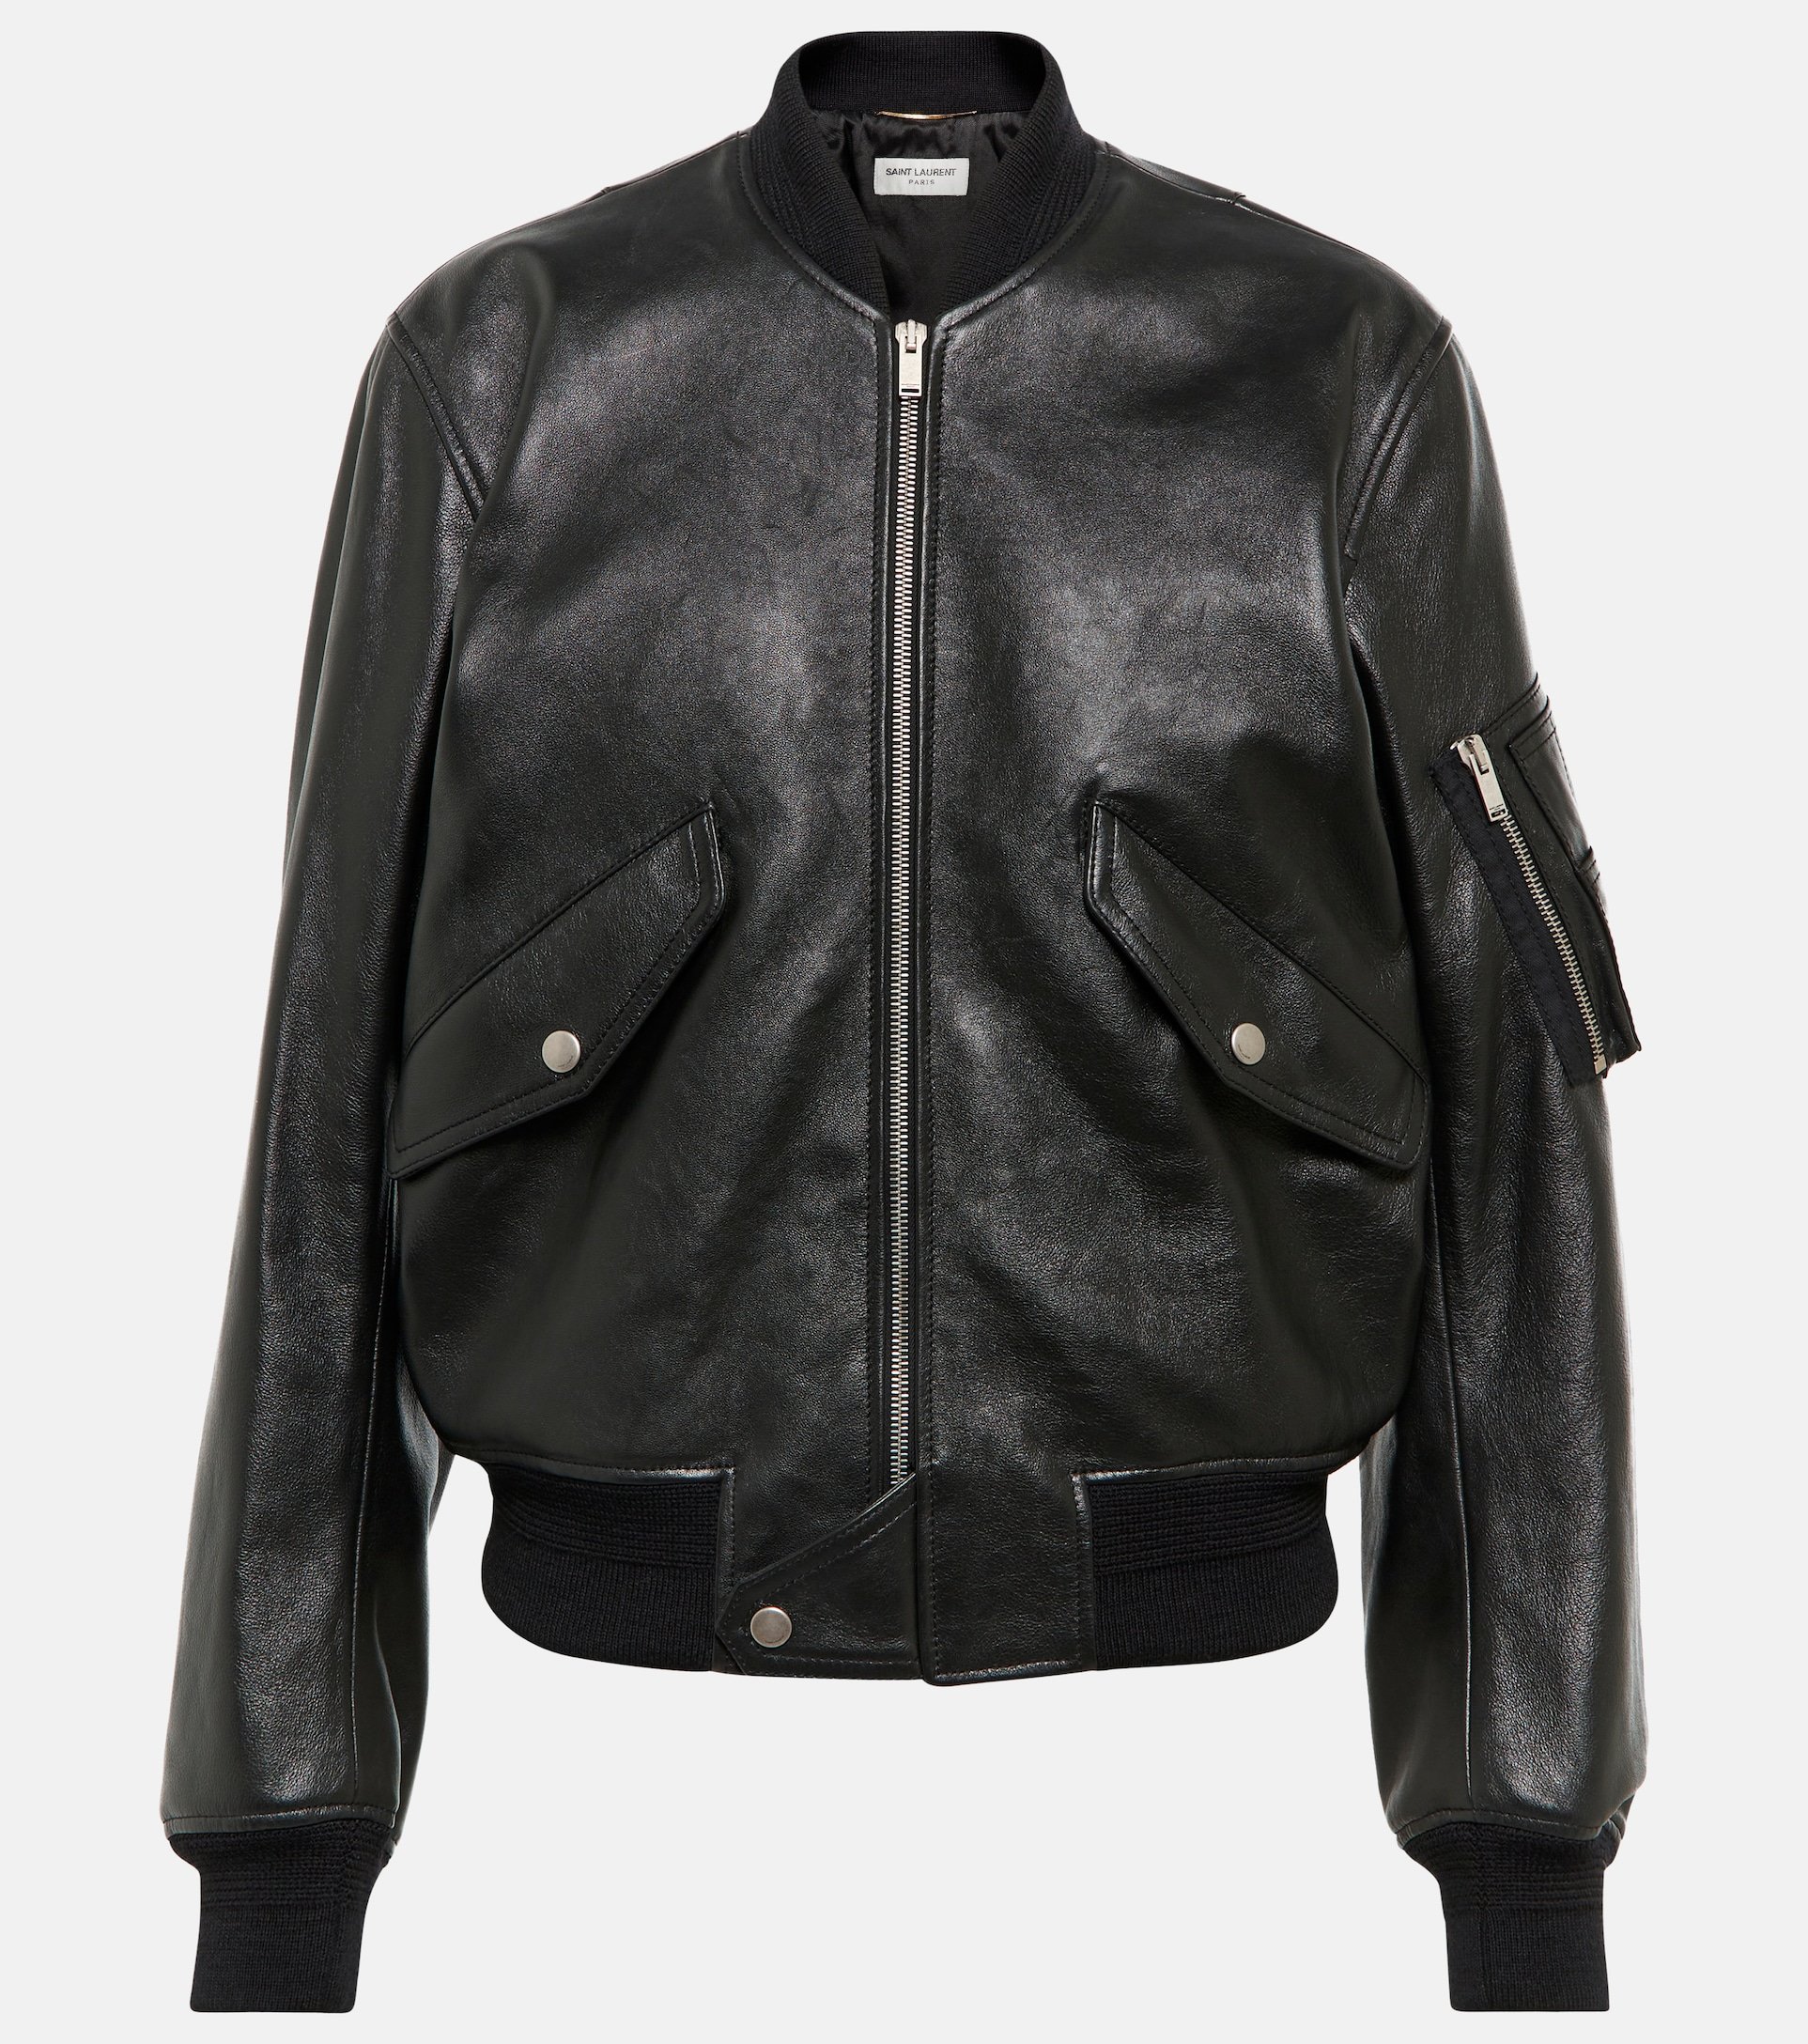 Saint Laurent Leather Jacket.jpg